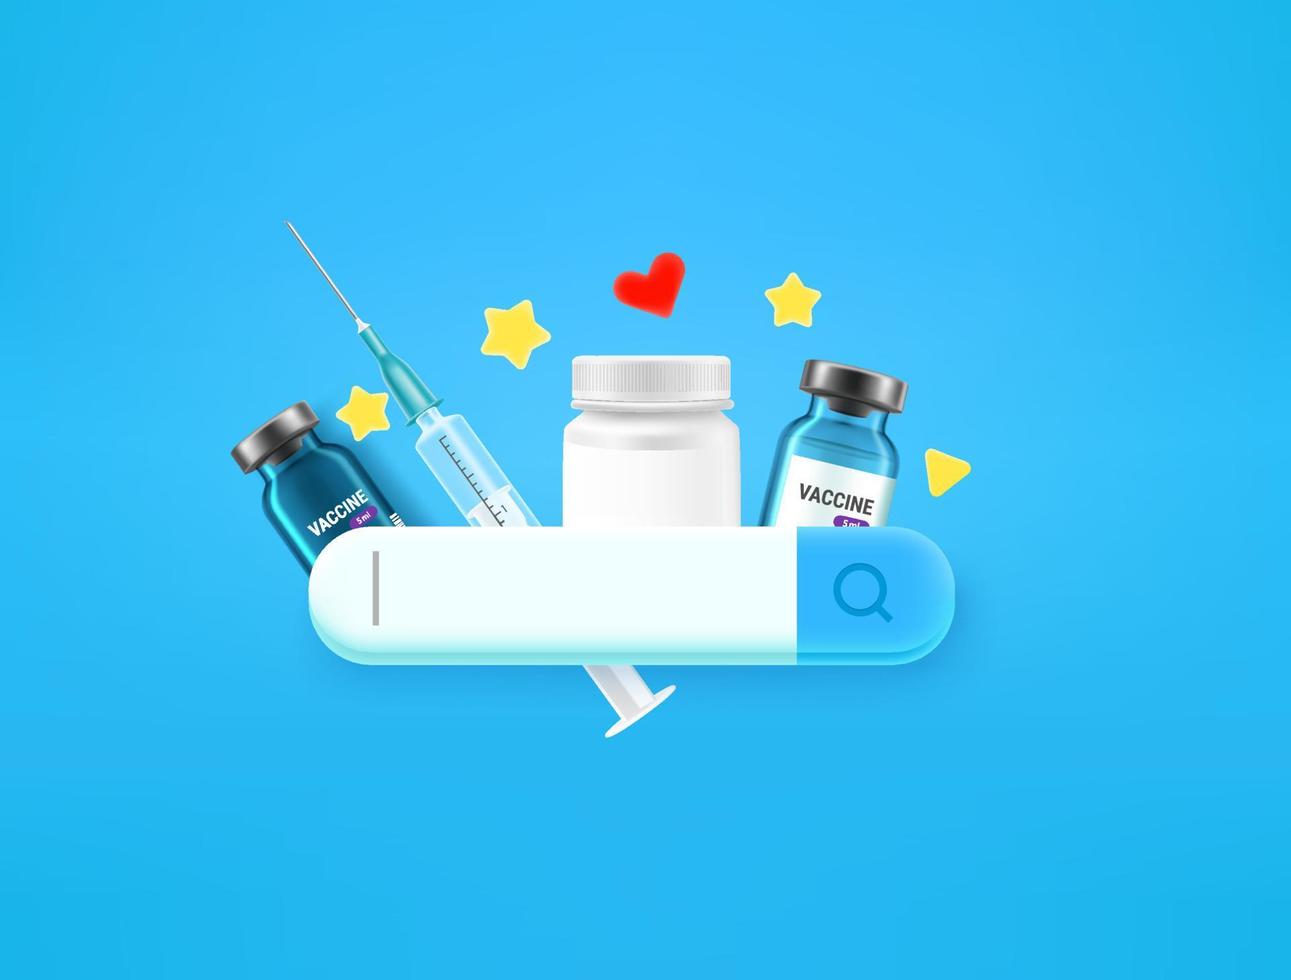 zoeken naar medicijnen op internet met zoektabblad. 3D-stijl vectorillustratie vector